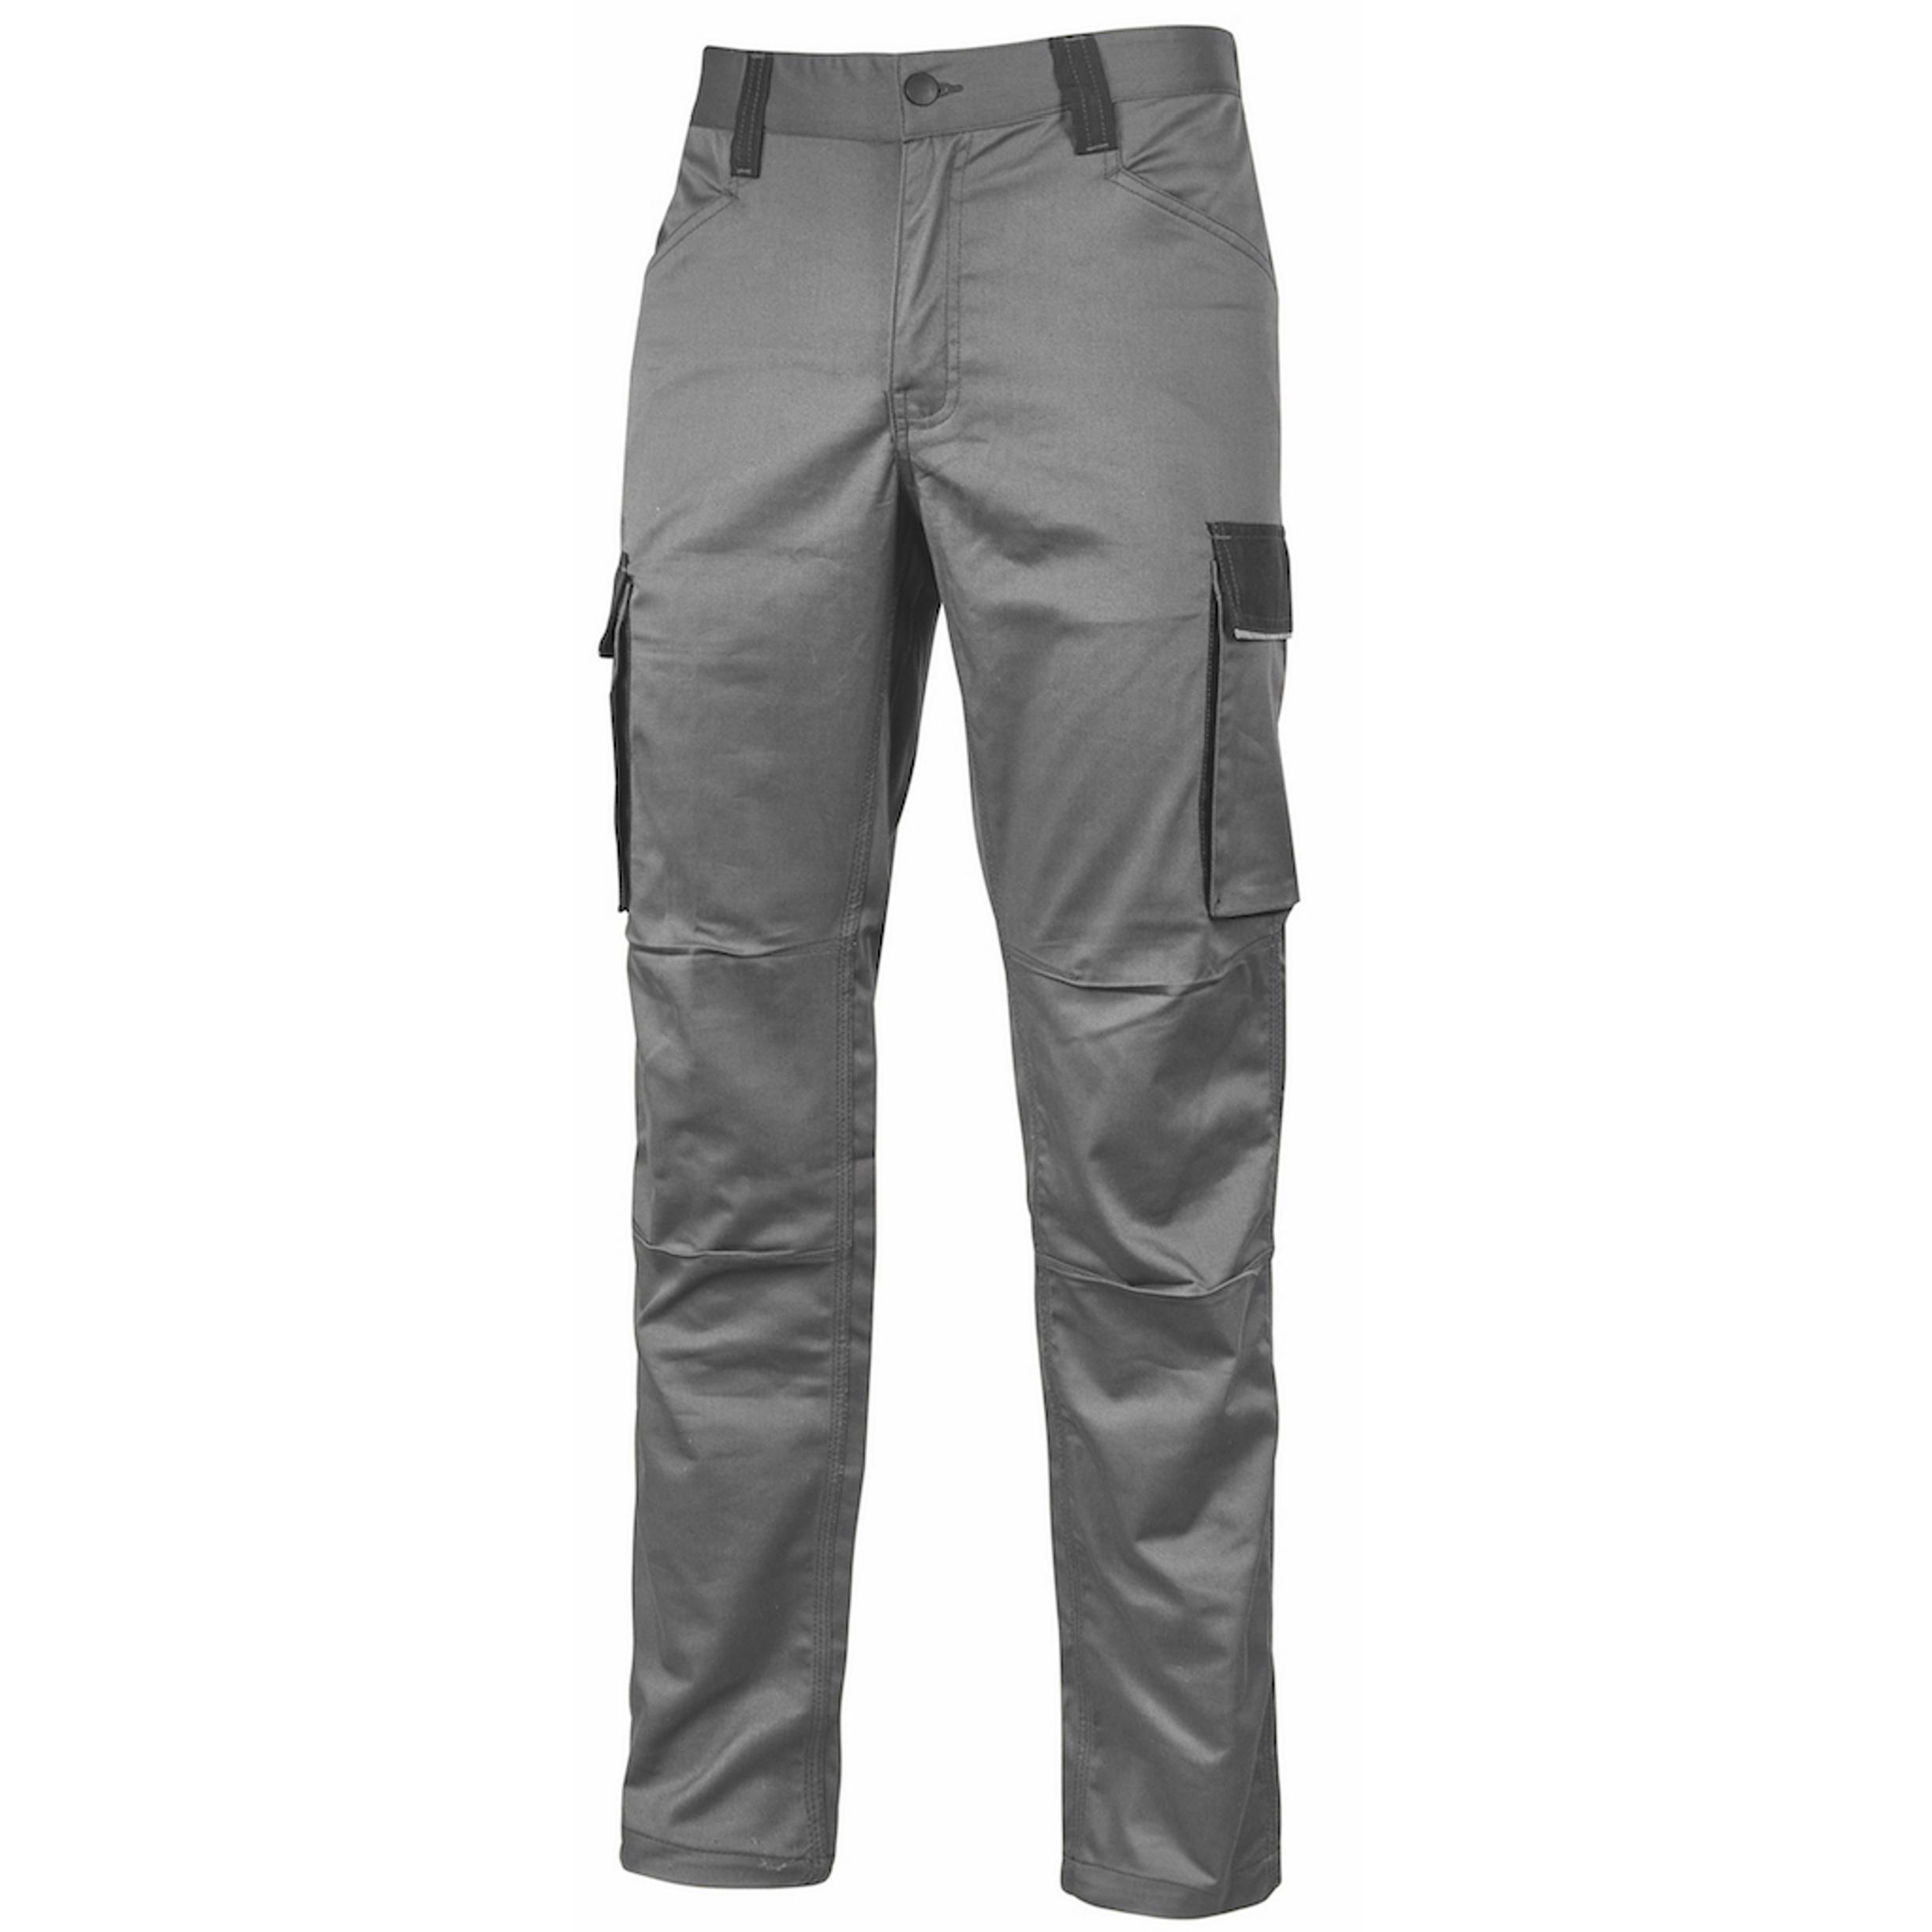 Pantalone da lavoro U-Power CRAZY, sicurezza e stile